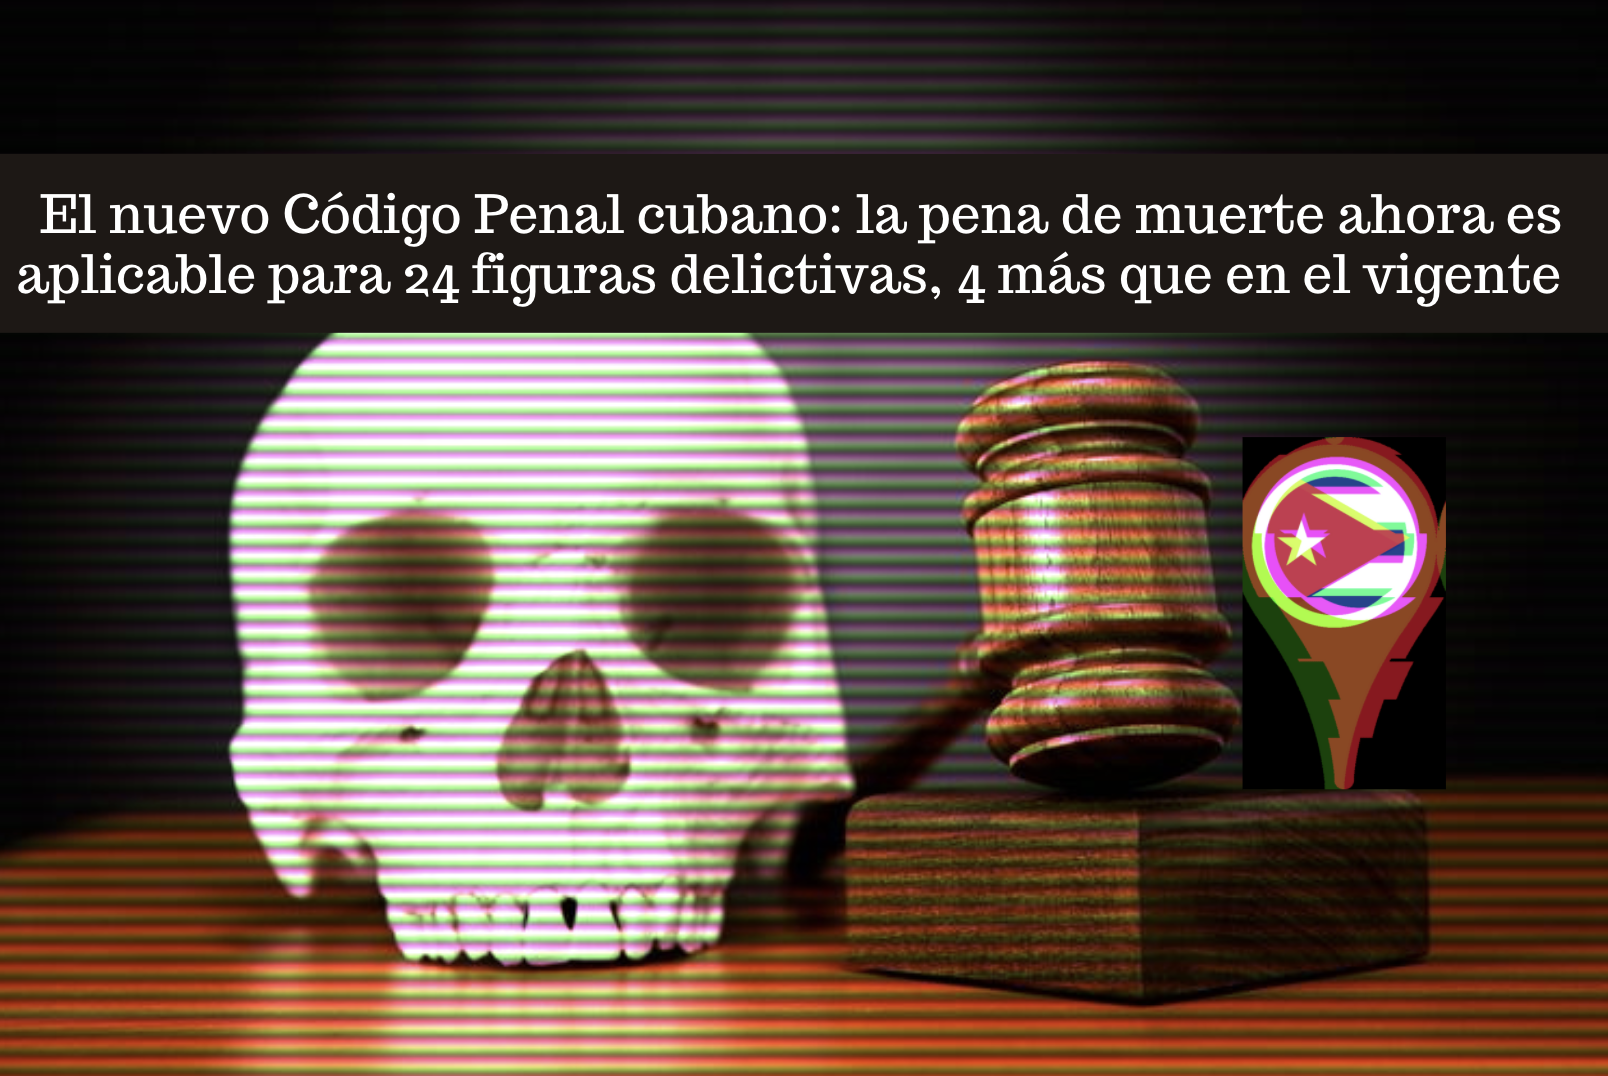 El Nuevo Código Penal en Cuba texto en contexto Observatorio Cubano